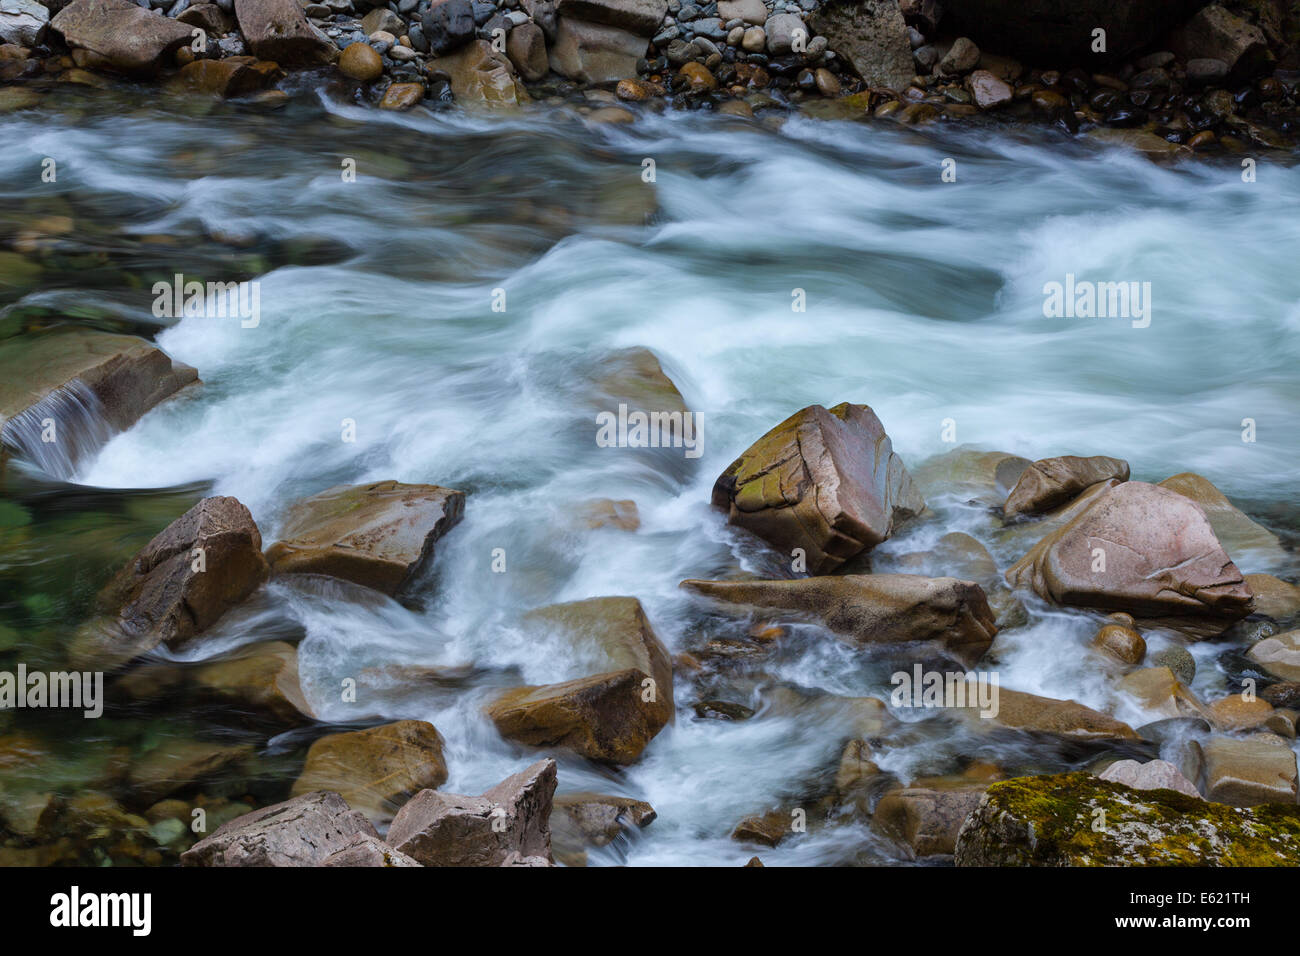 L'acqua del fiume coquihalla fluente attraverso uno stretto canyon dall'othello gallerie ferroviarie, nei pressi di speranza, British Columbia, Canad Foto Stock